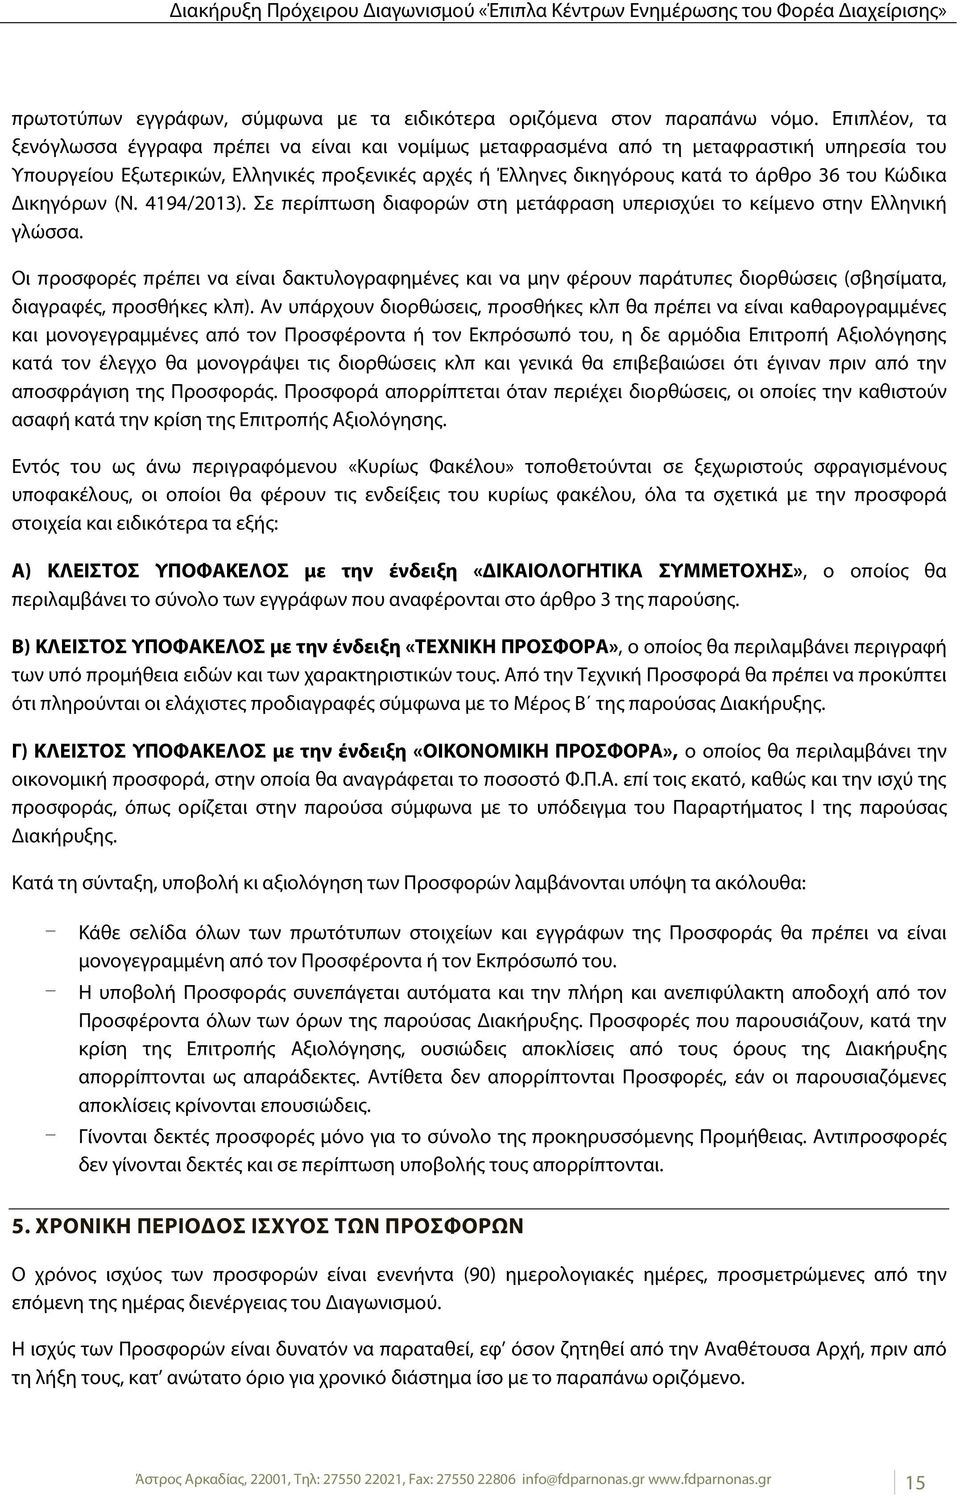 Κώδικα Δικηγόρων (Ν. 4194/2013). Σε περίπτωση διαφορών στη μετάφραση υπερισχύει το κείμενο στην Ελληνική γλώσσα.